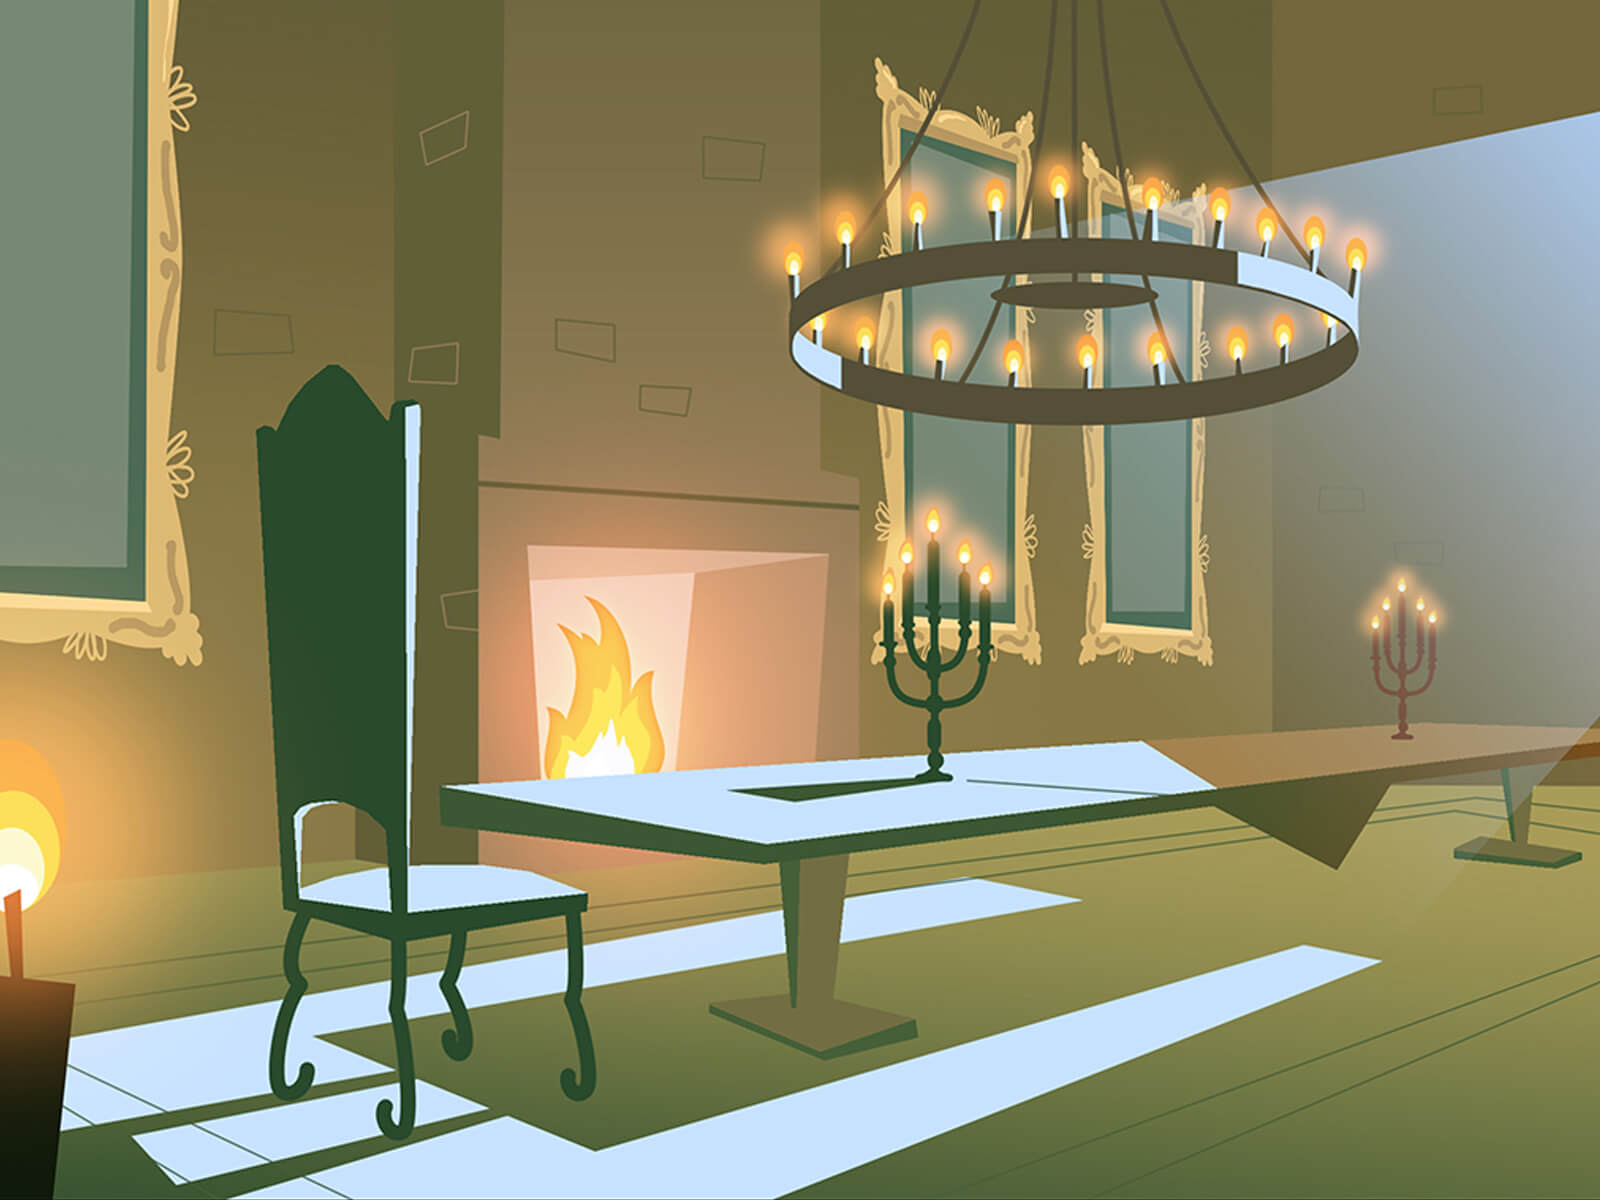 Arte conceptual de una mesa de comedor larga con sillas de respaldo alto junto a una chimenea. Un candelabro a la luz de las velas brilla en lo alto.